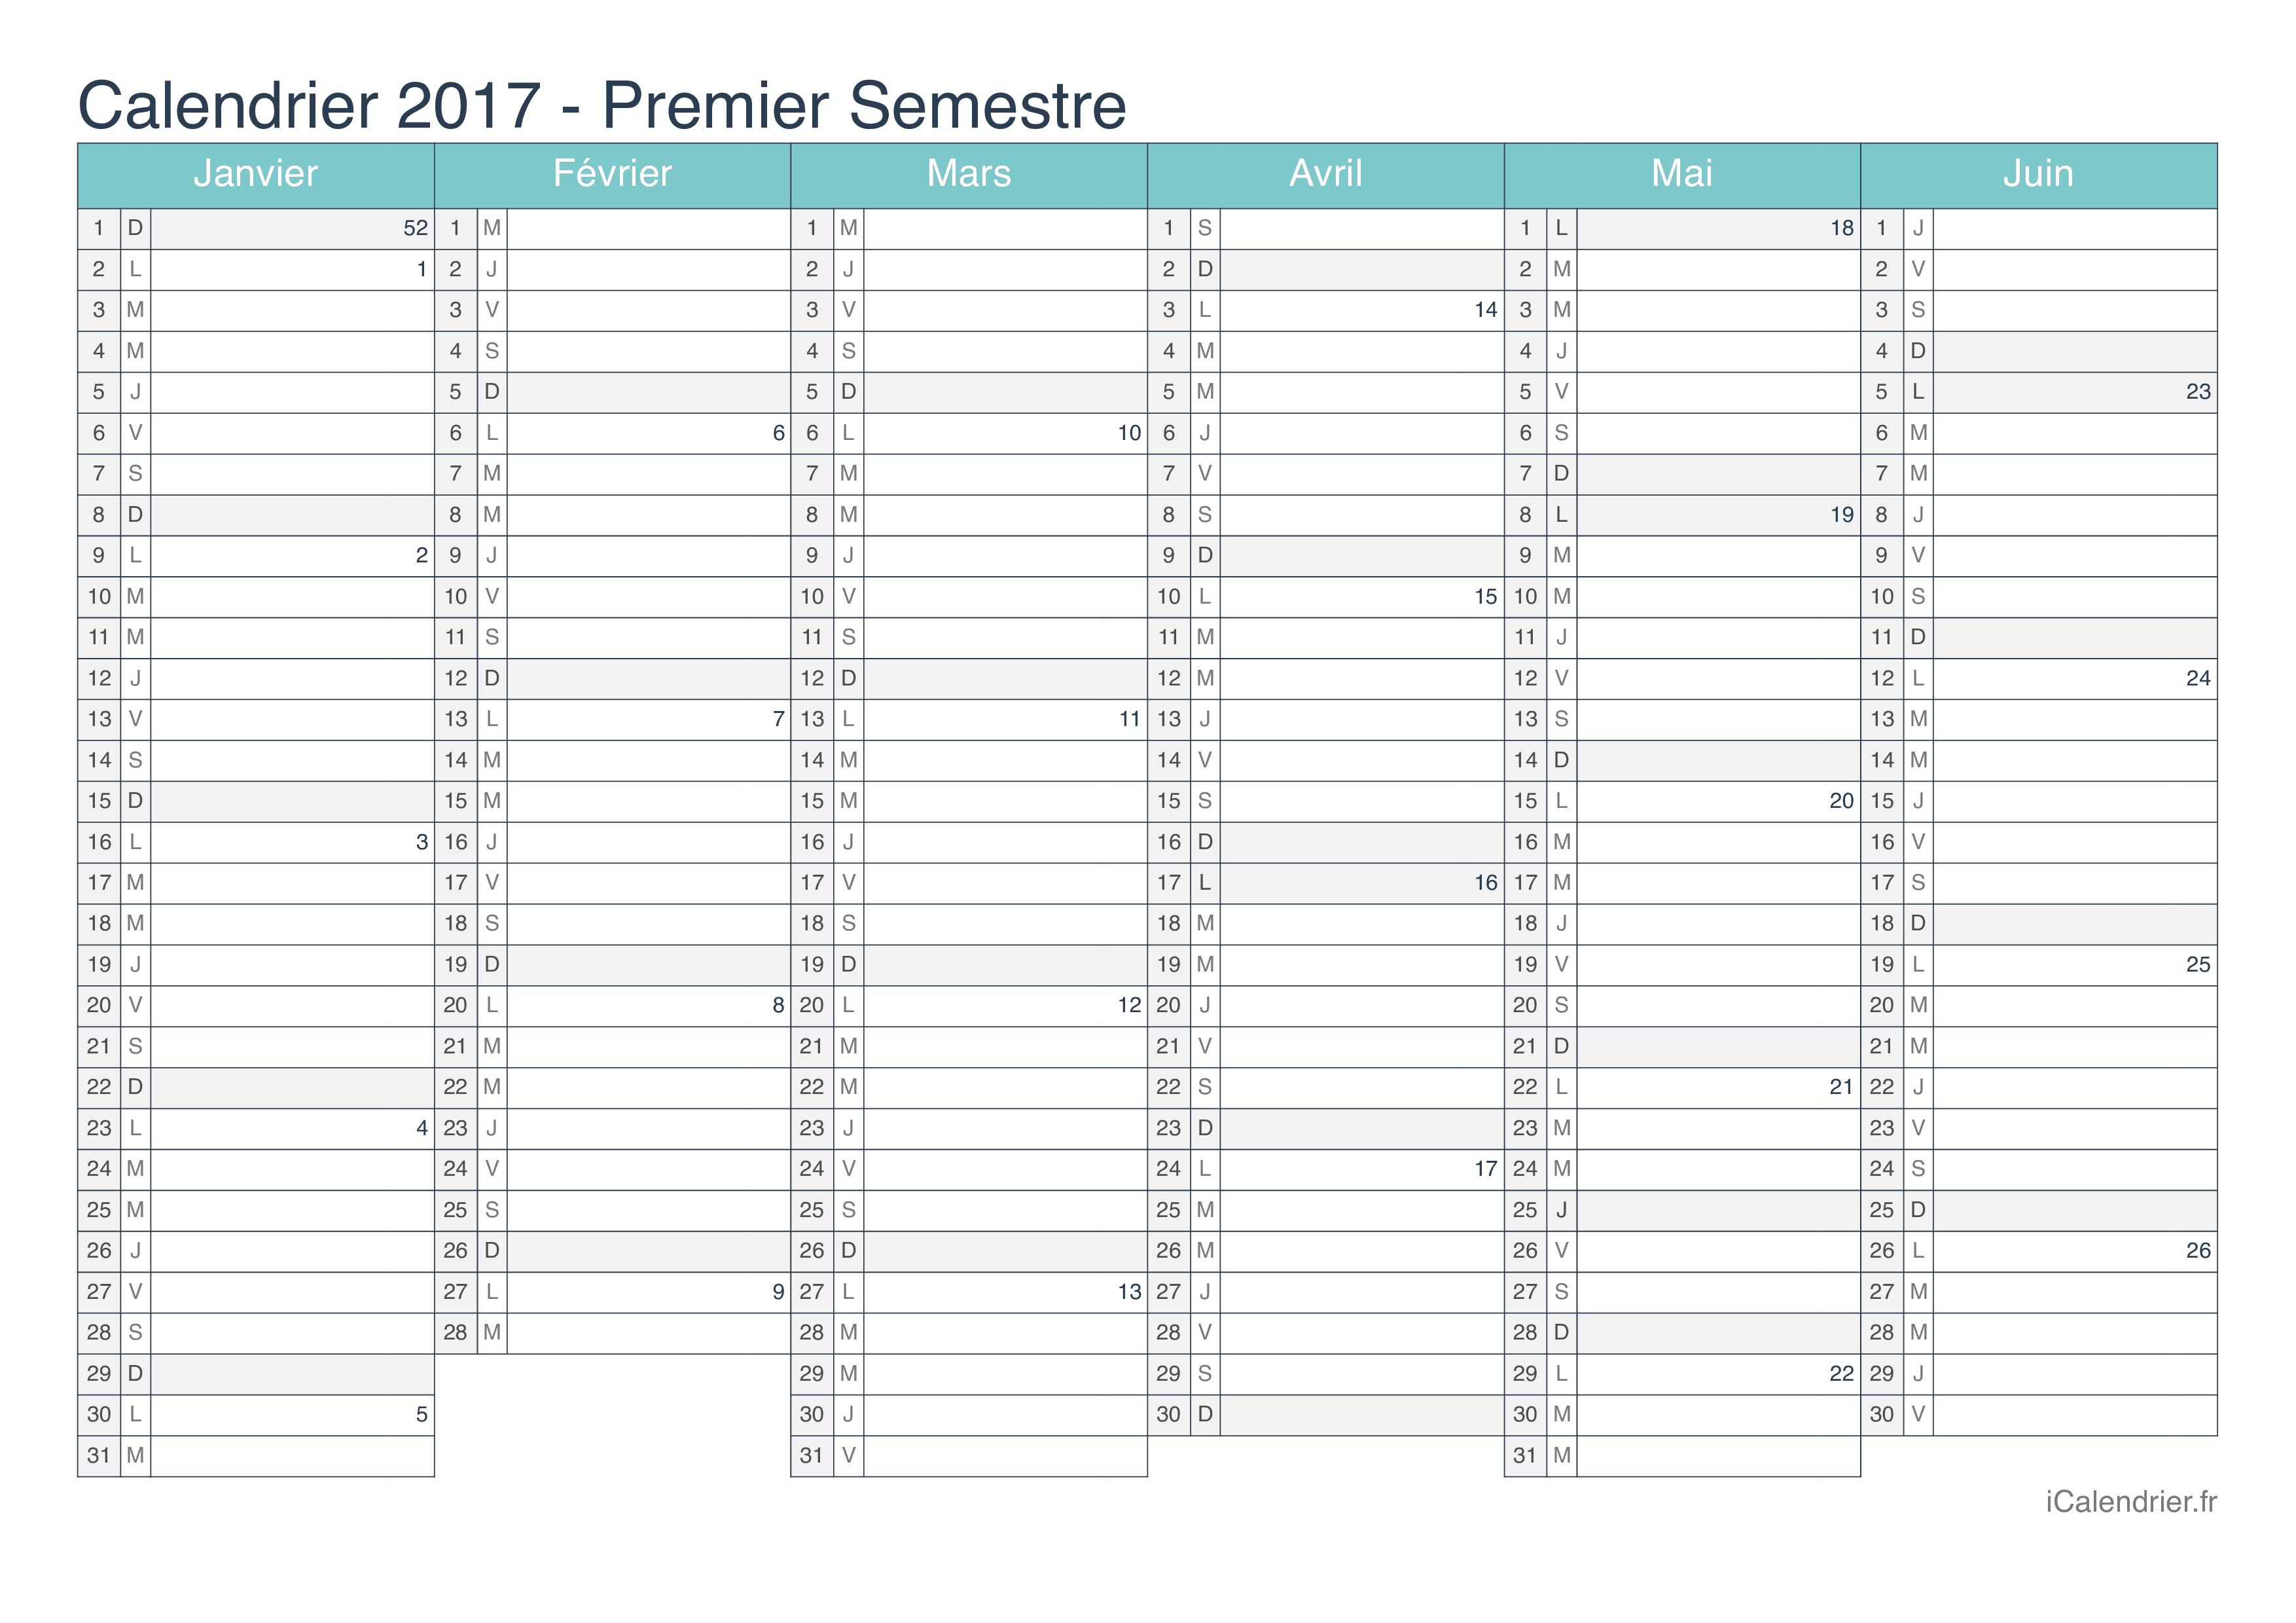 Calendrier par semestre avec numéros des semaines 2017 - Turquoise